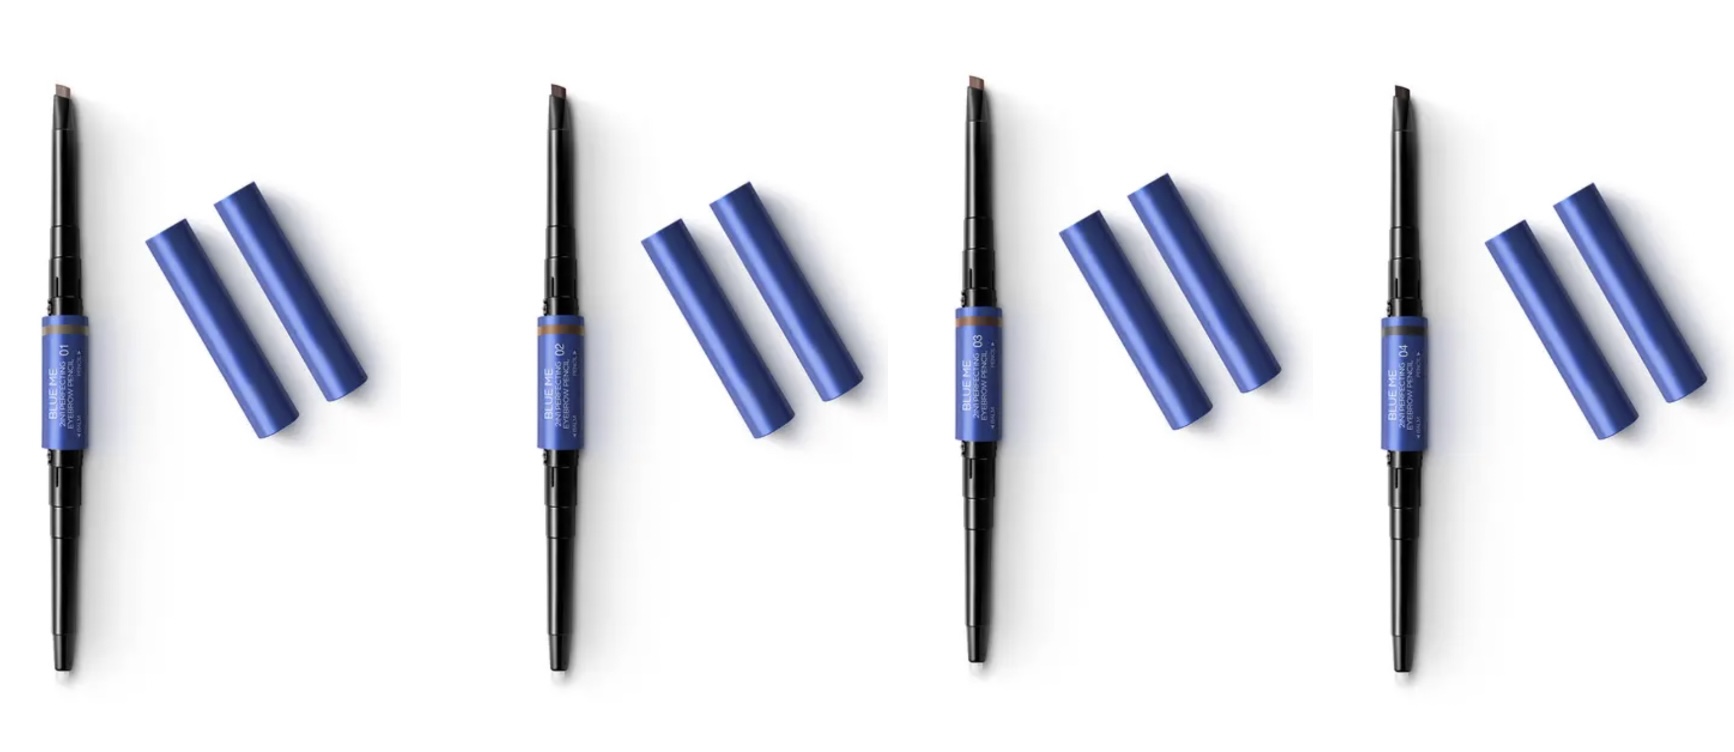 Collection automne 2022 de KIKO Blue Me 2-In-1 Perfecting Eyebrow Pencil